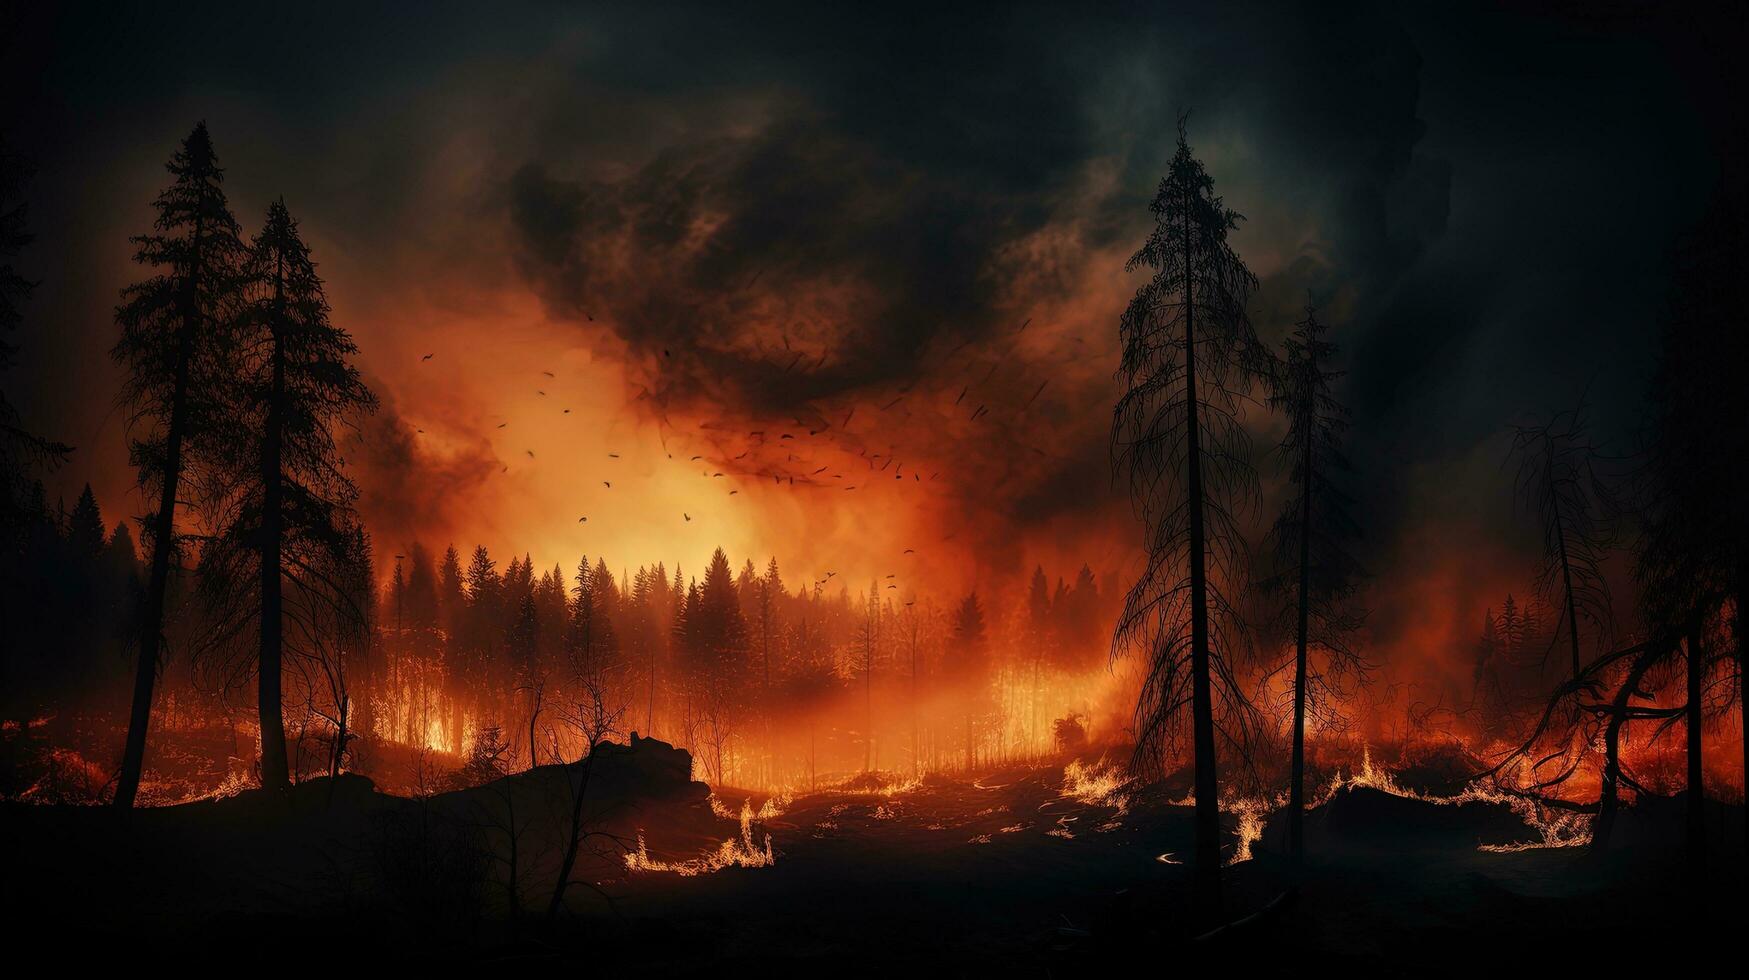 nattetid skog brand ett olyckligt naturlig händelse. silhuett begrepp foto